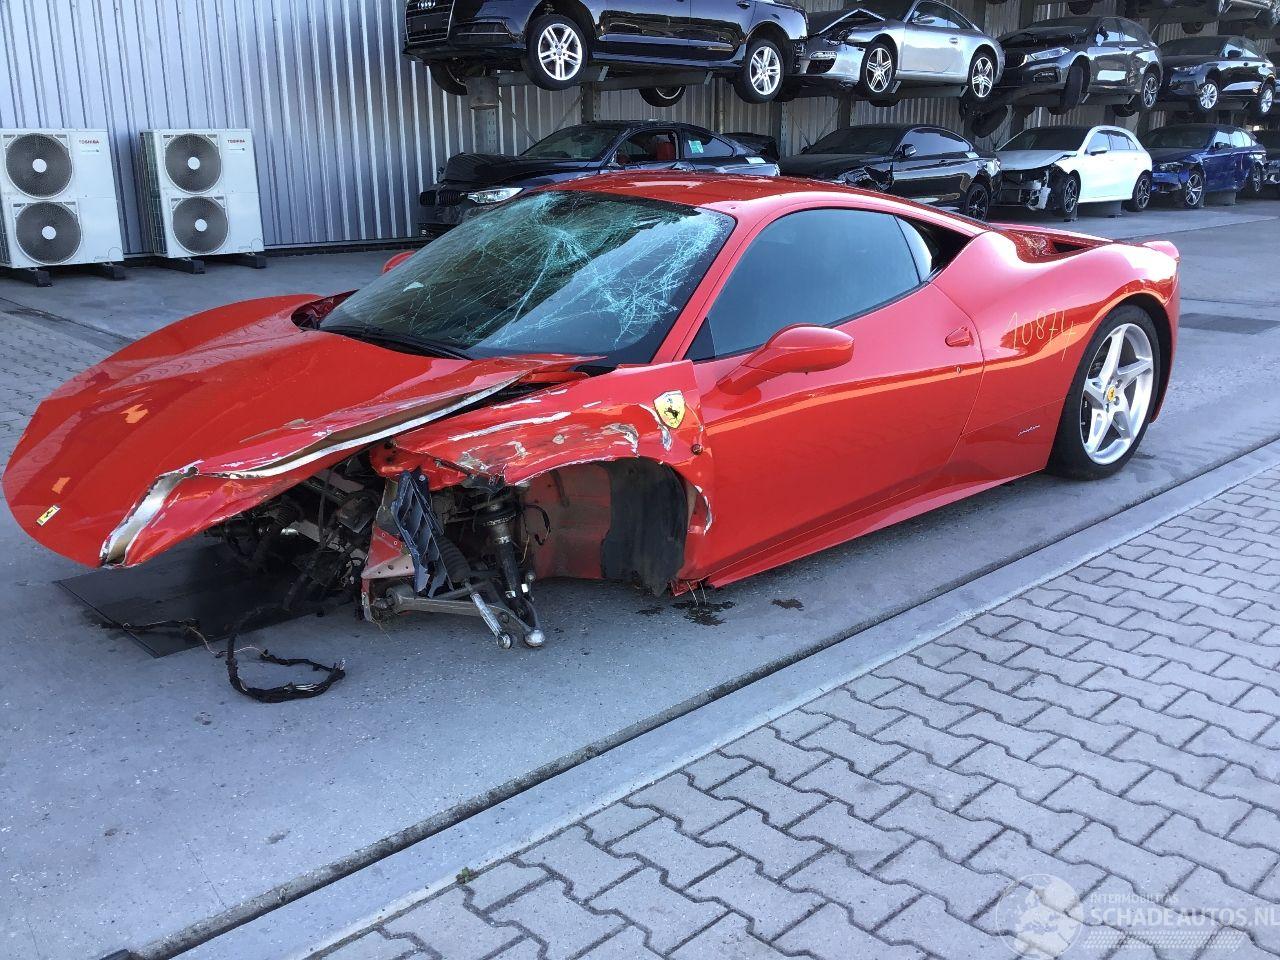 Ferrari 458 